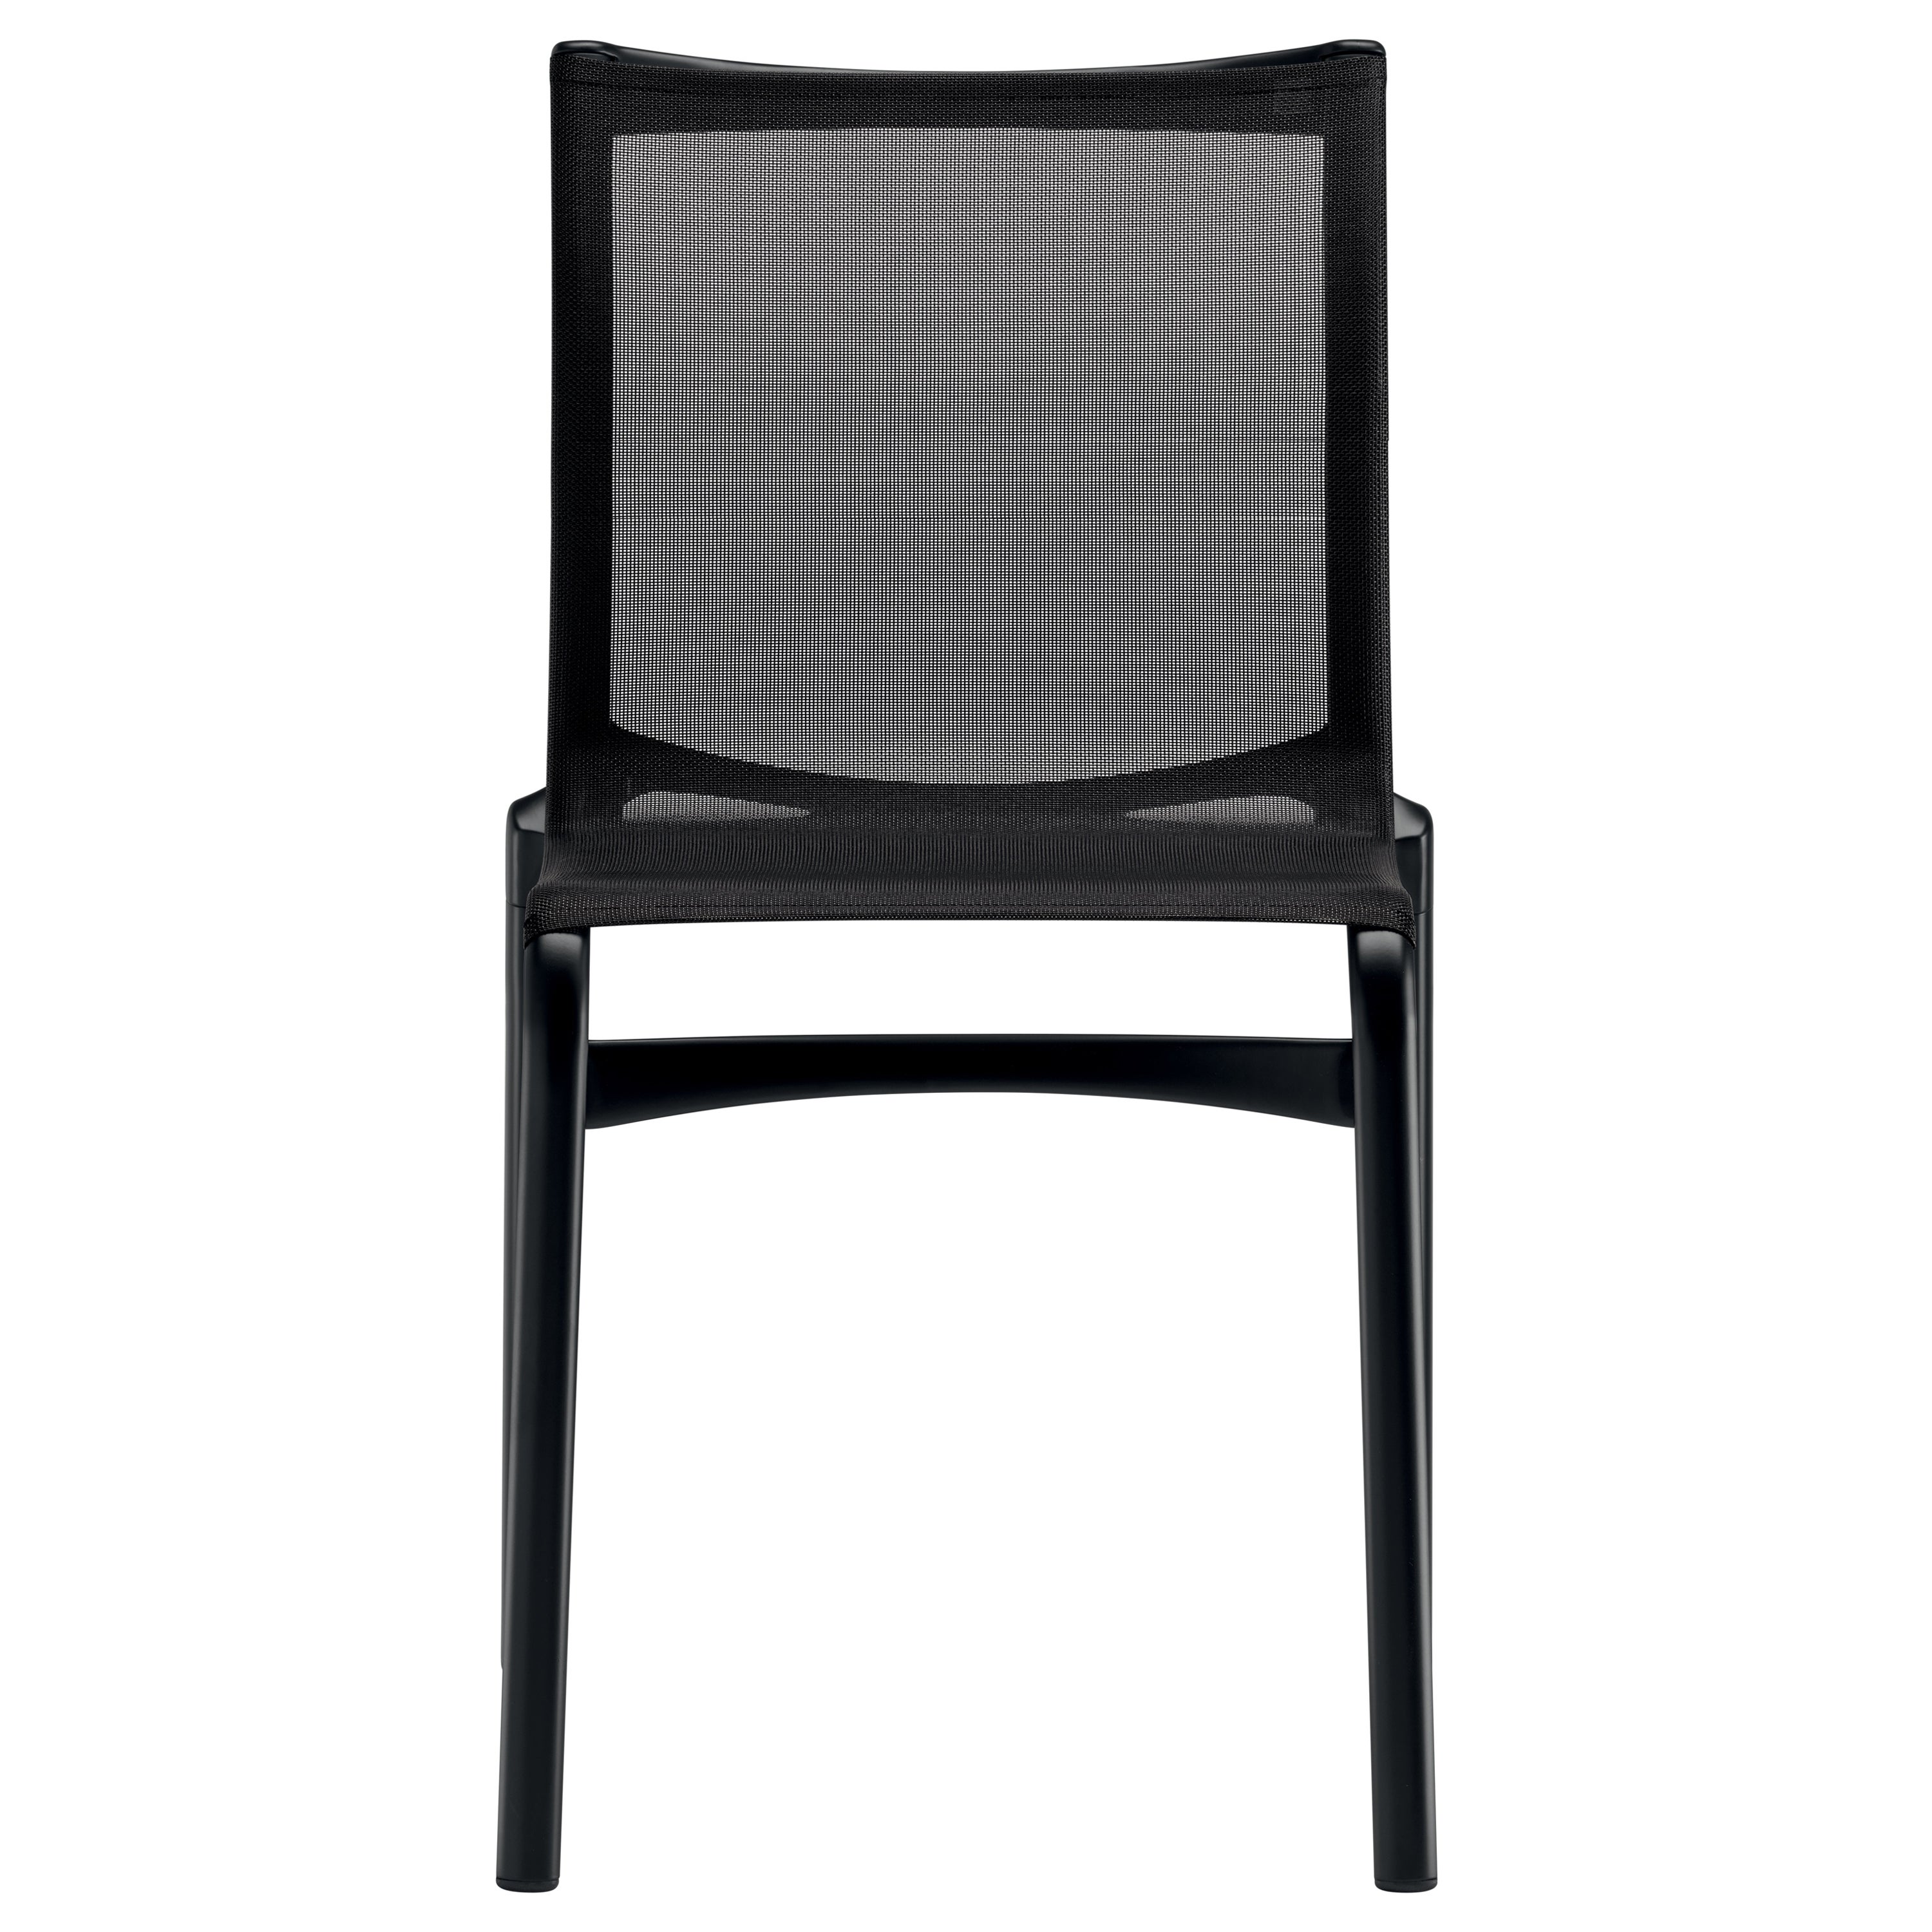 Chaise Bigframe 44 Alias avec assise en maille noire et cadre en aluminium laqué